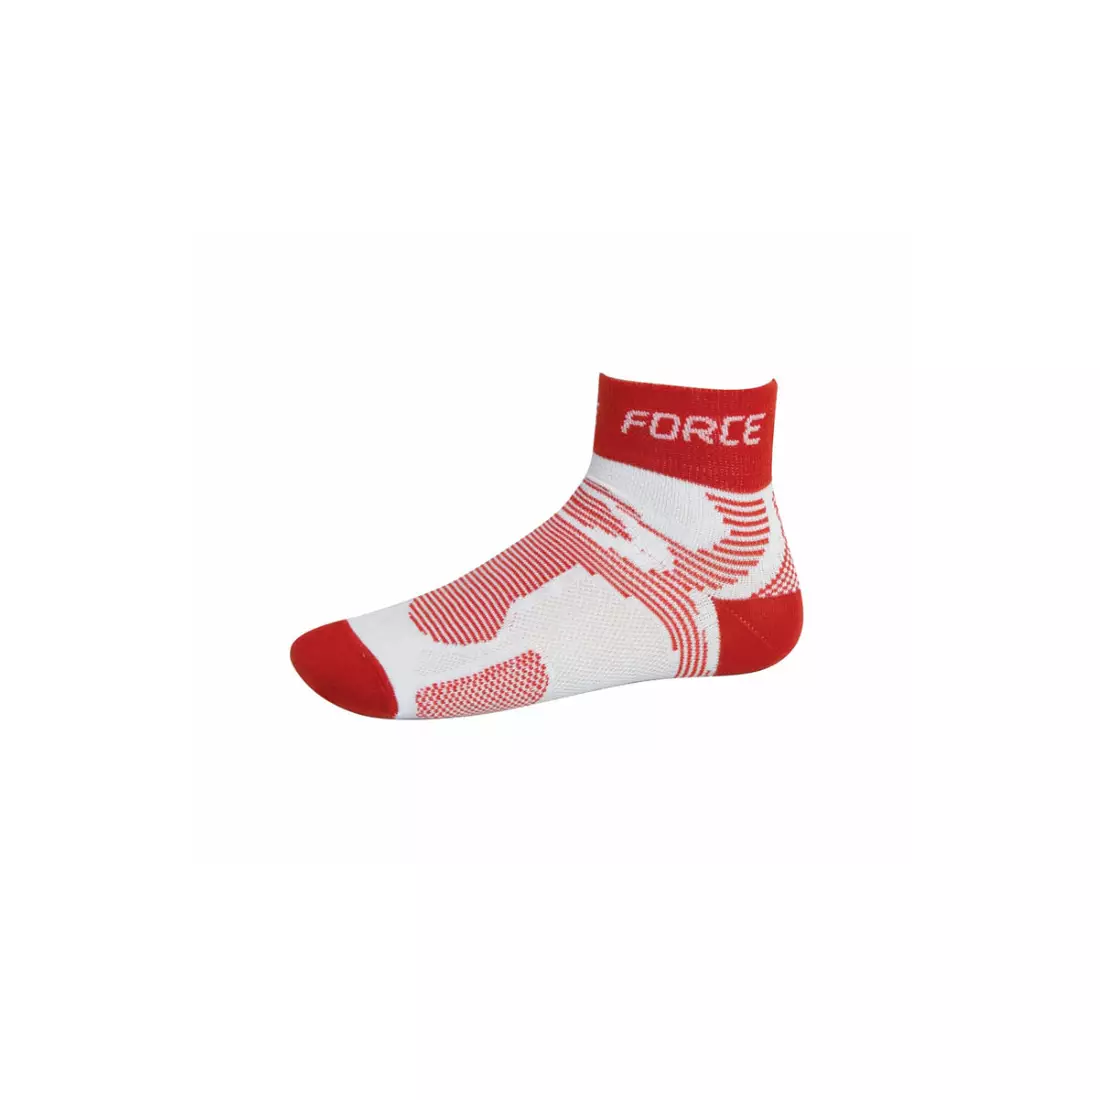 FORCE 2 COOLMAX športové ponožky 901024/901028 - biele a červené